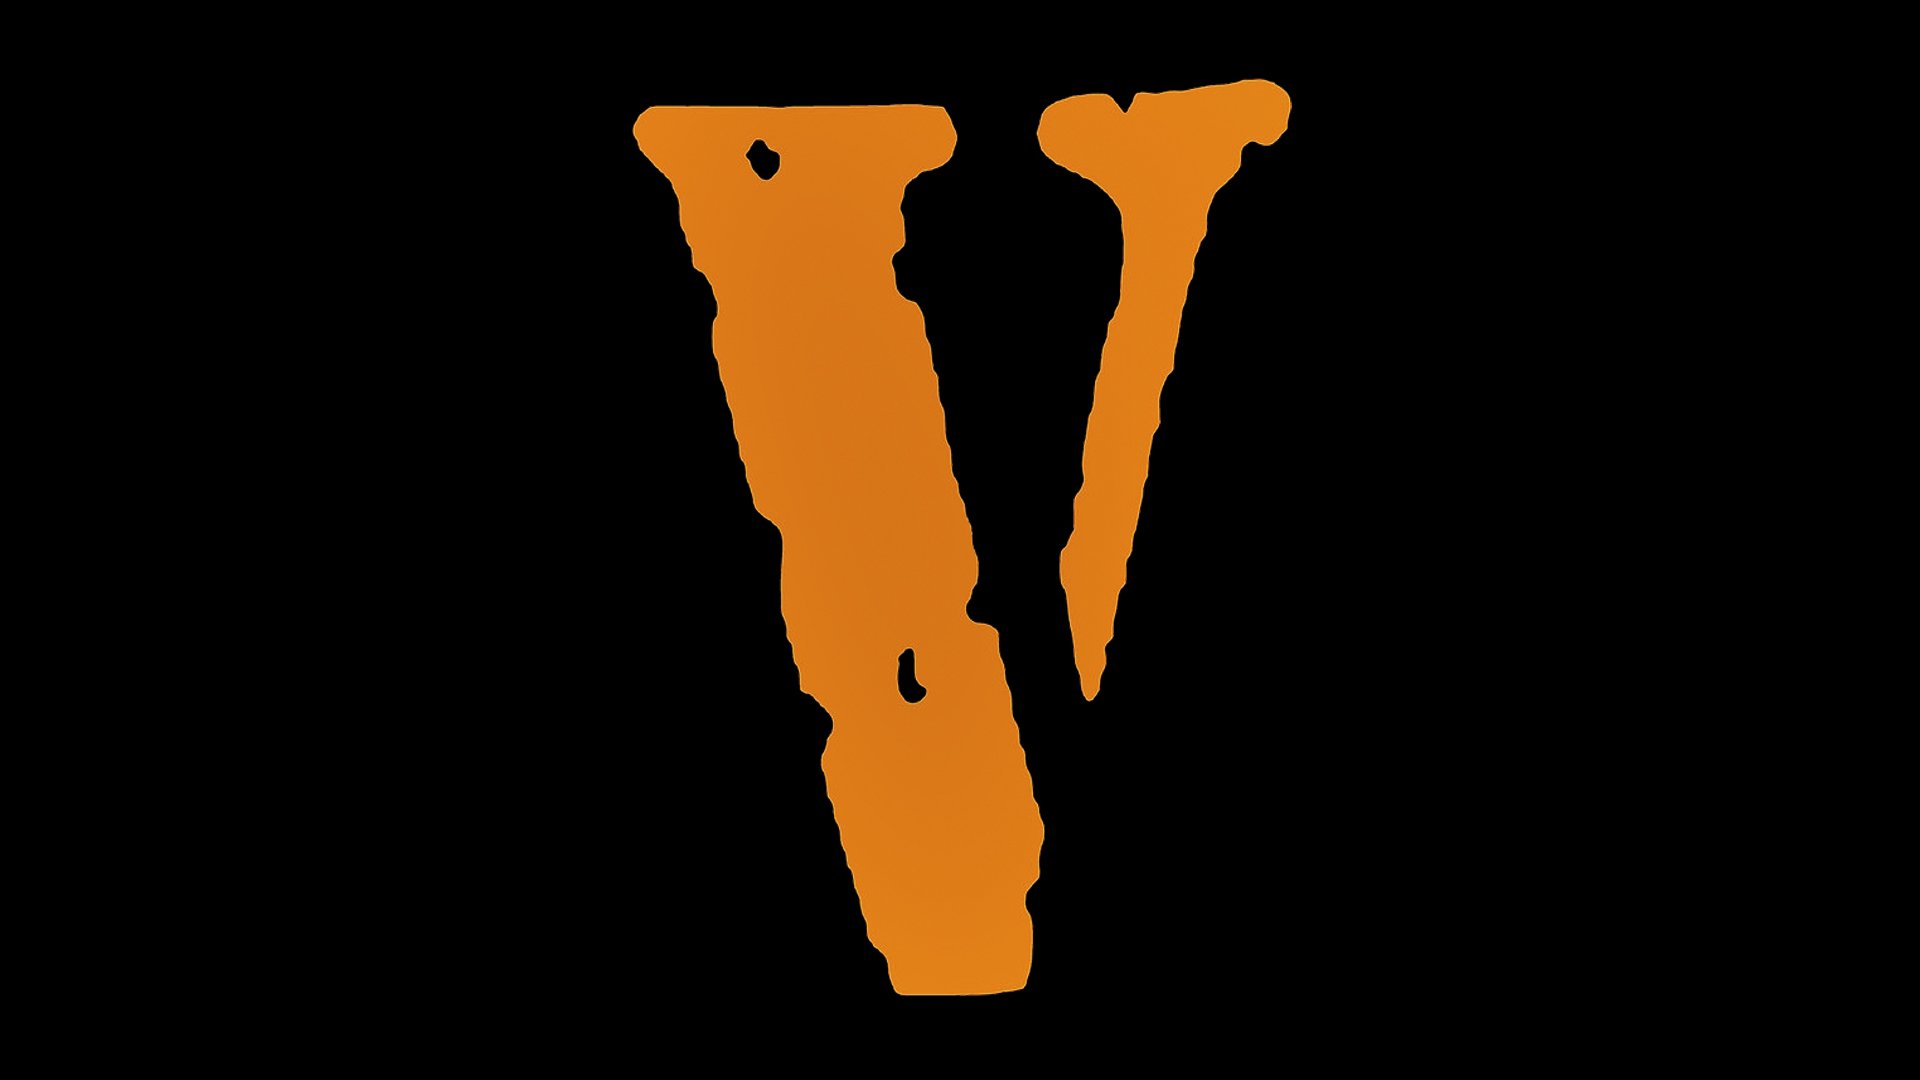 Vlone Friends Logo Wallpapers